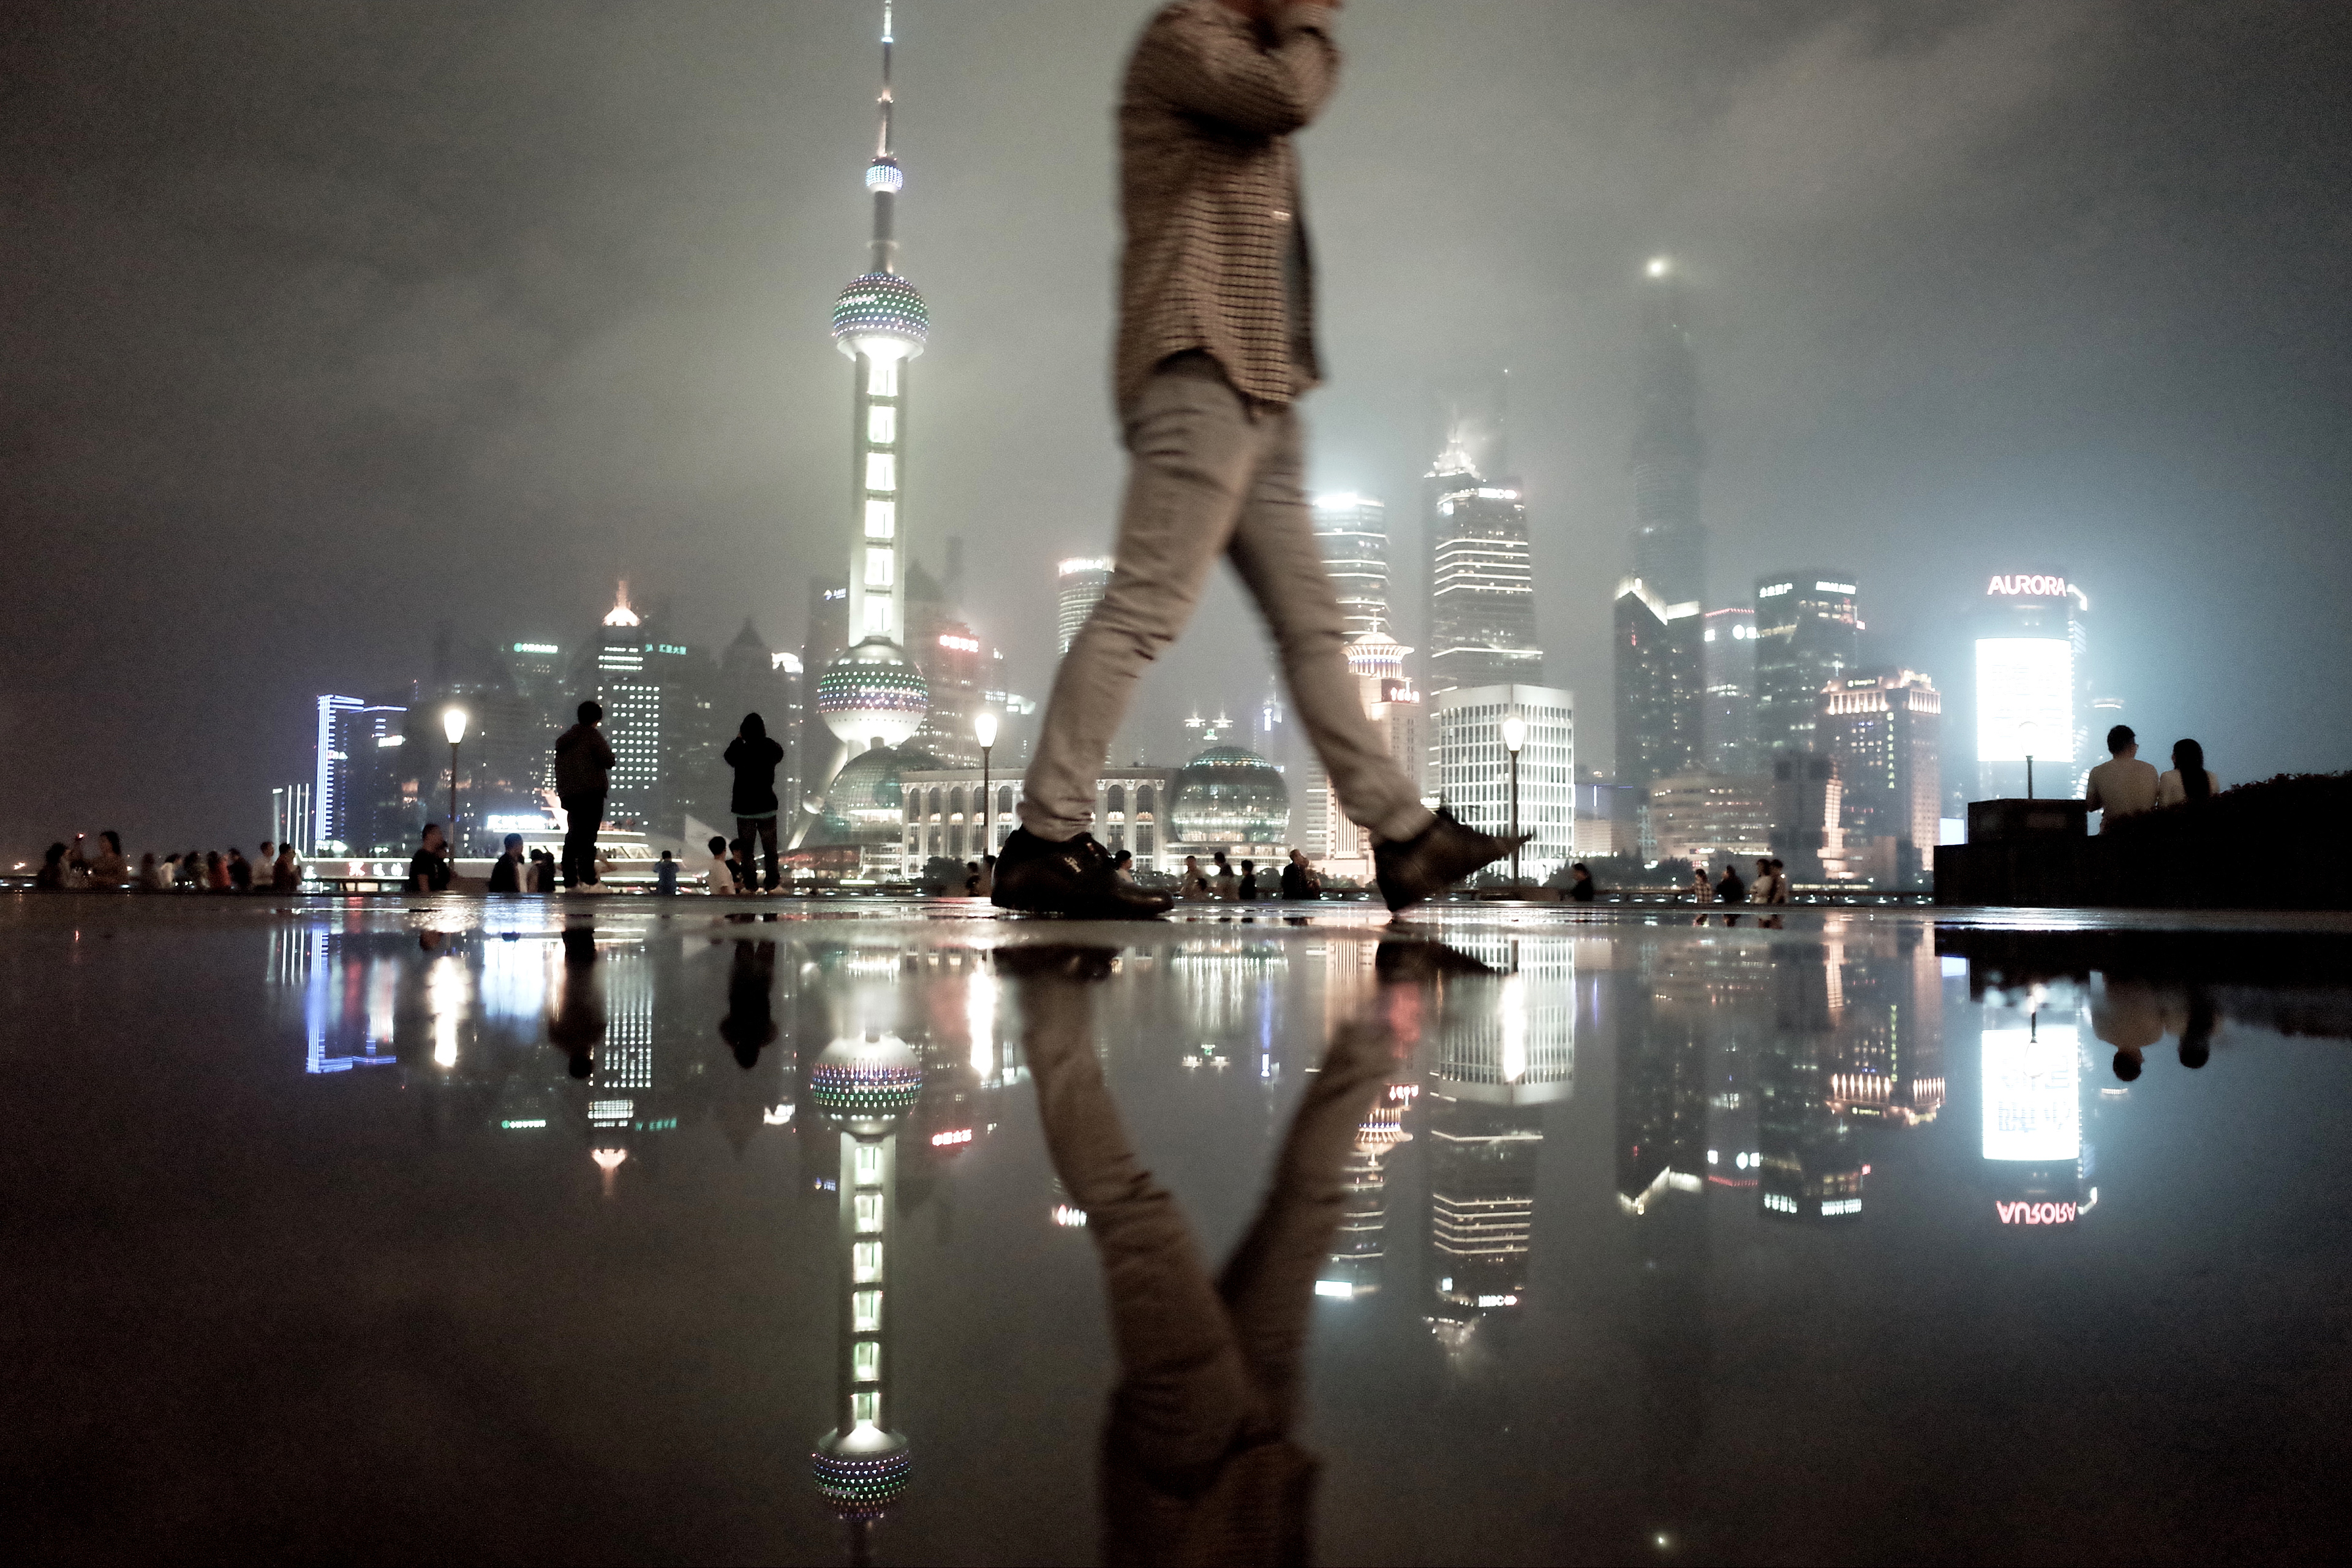 rain night of shanghai